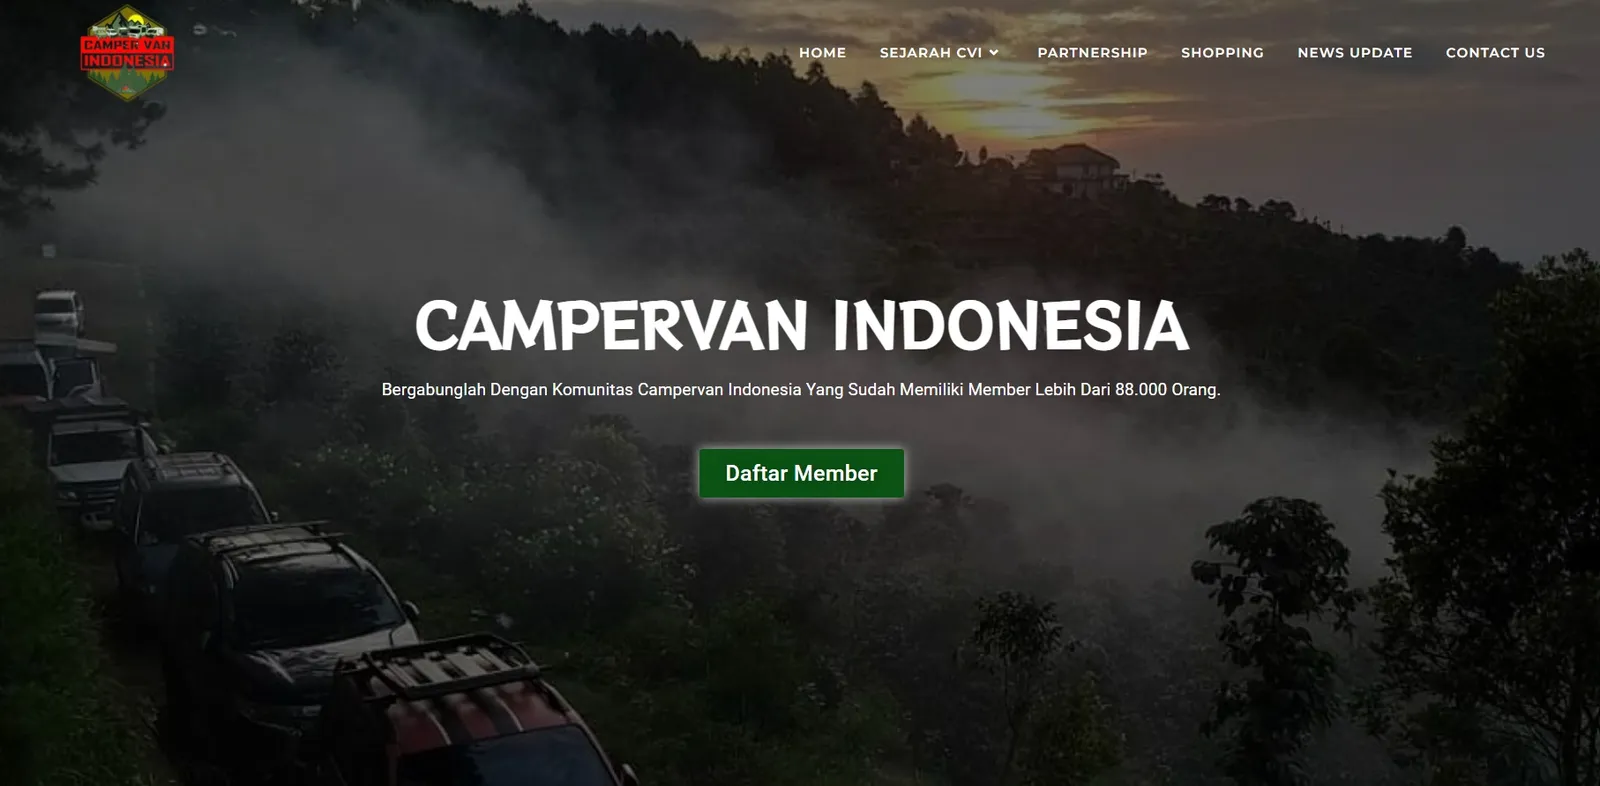 Mengenal Lebih Jauh Campervan Indonesia, Sejarah dan Cara Daftarnya